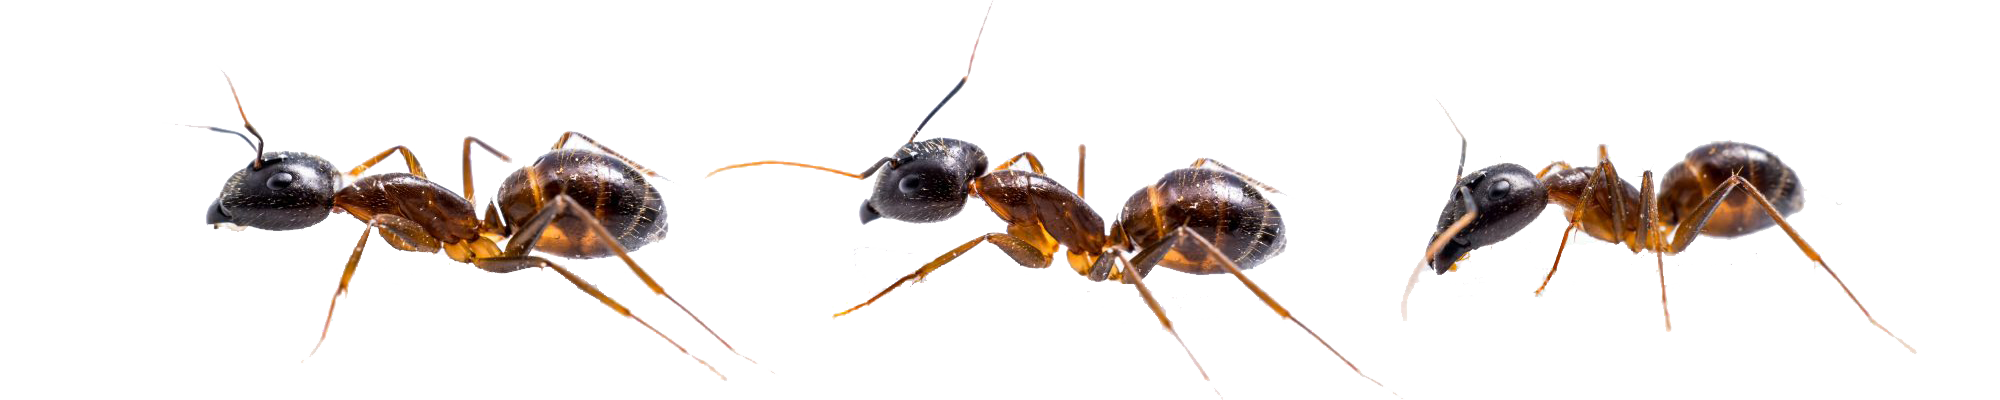 South Carolina Pest Control and Termite Service